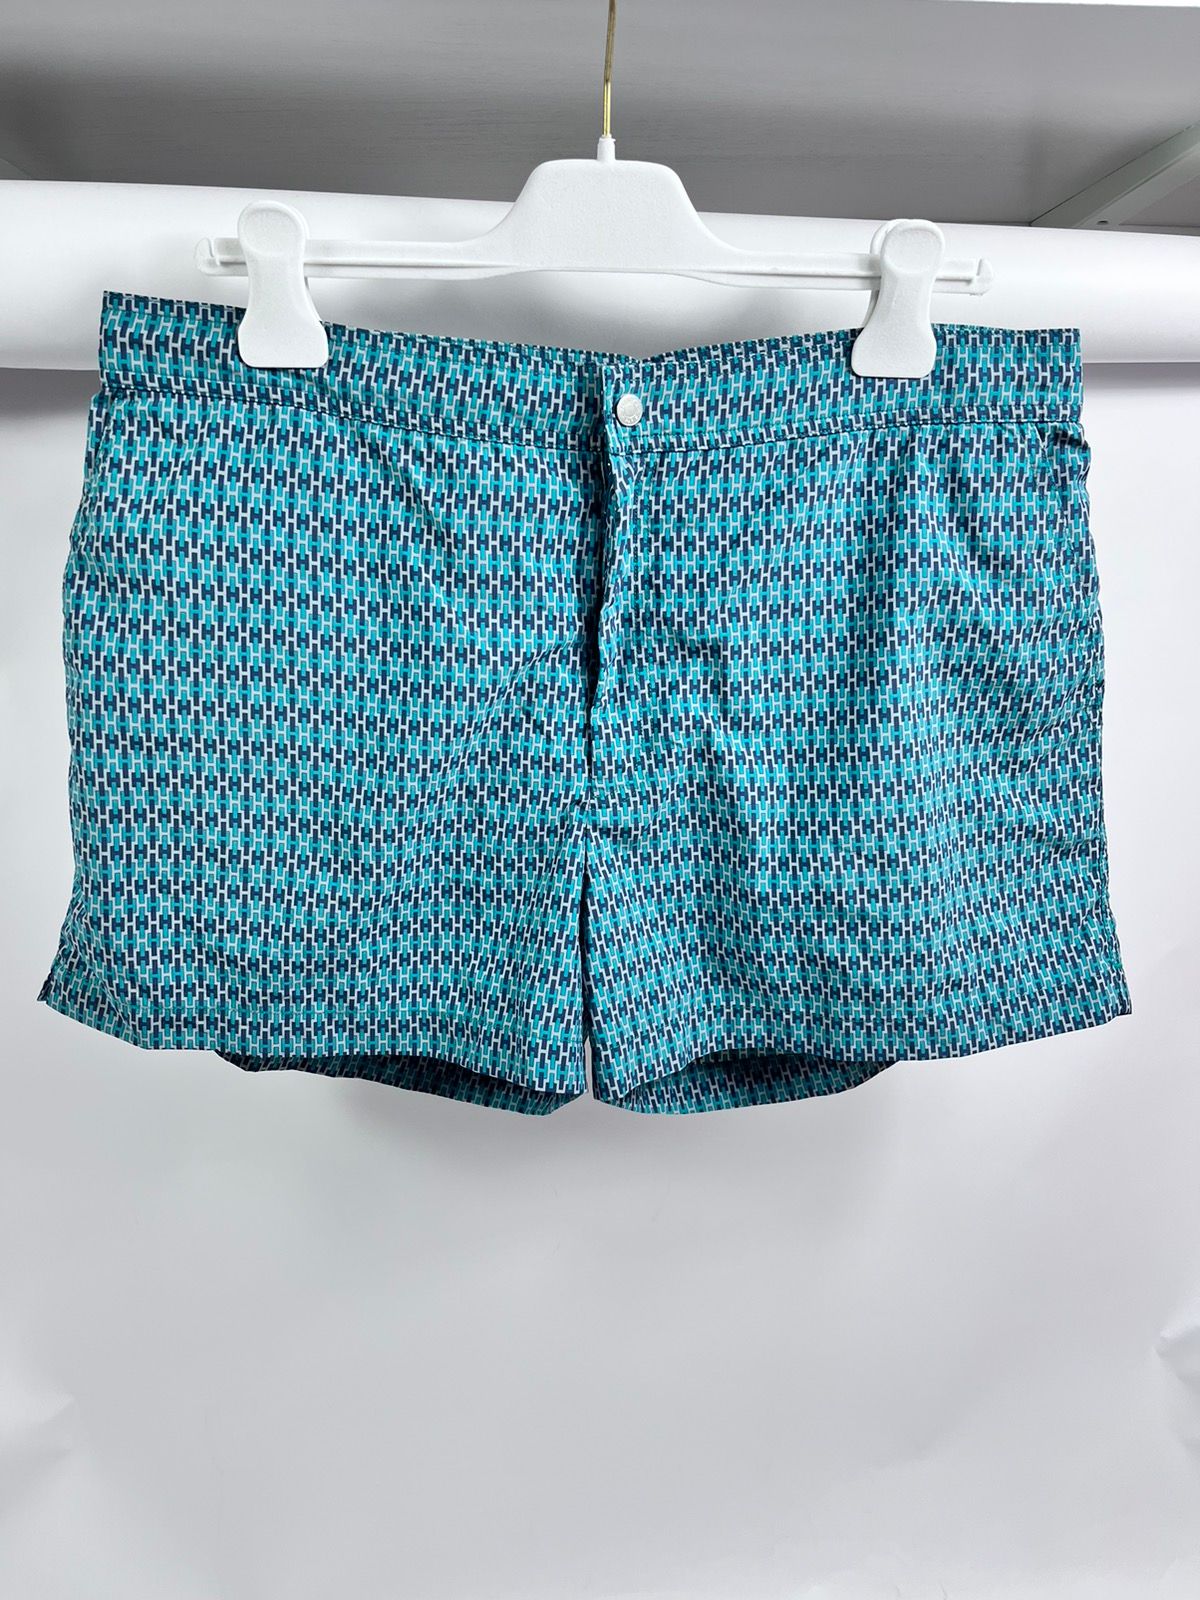 Hermes Swim shorts | Grailed